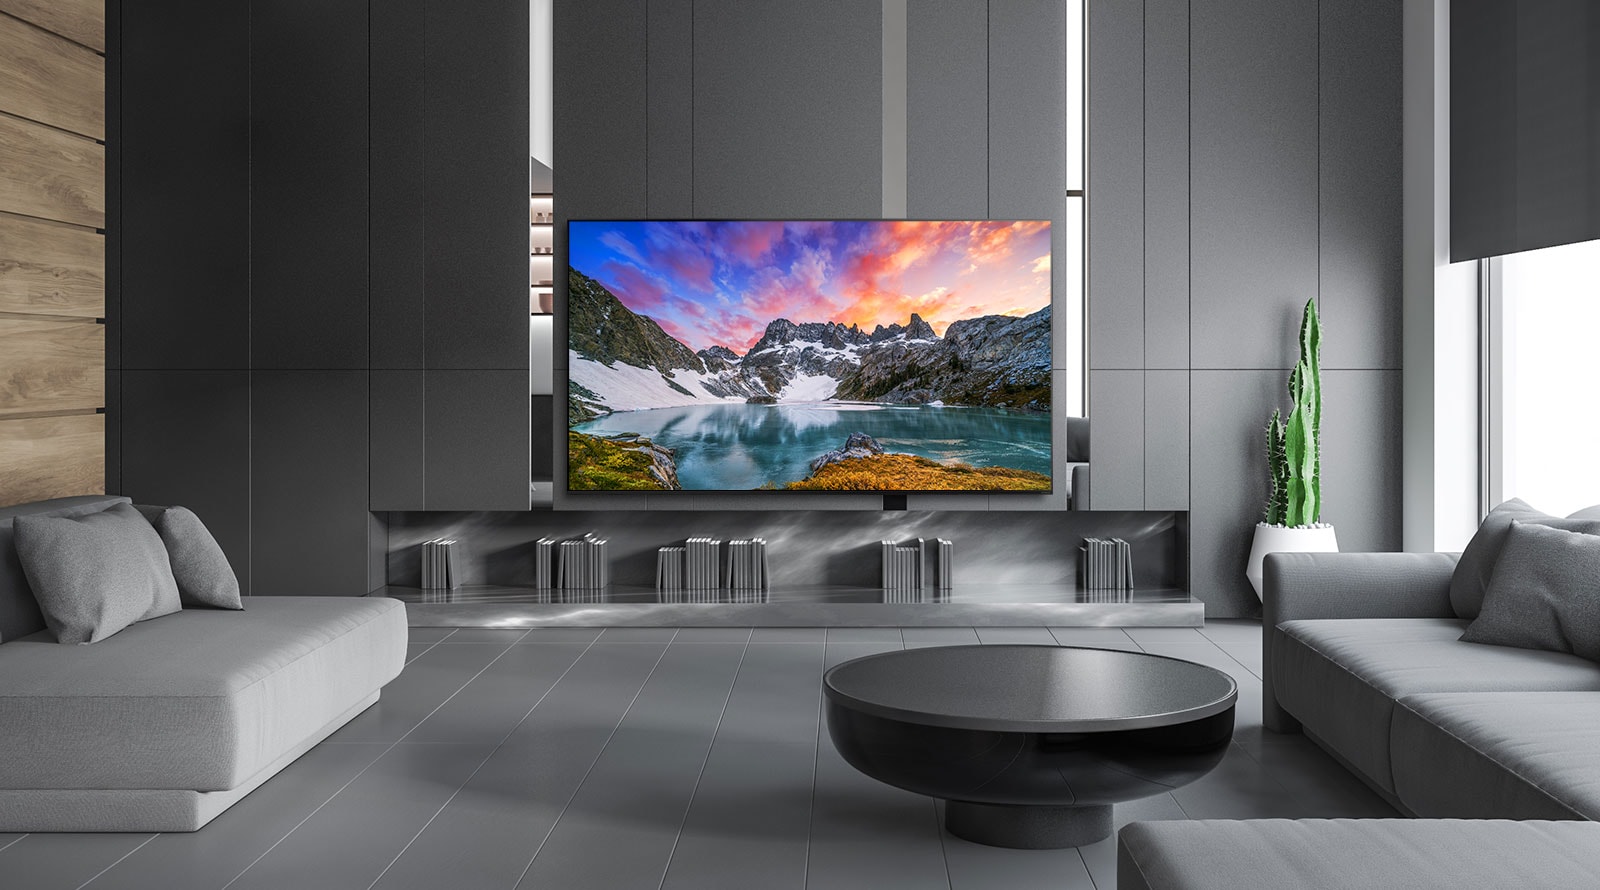 La lussuosa casa dispone di una TV con vista naturale